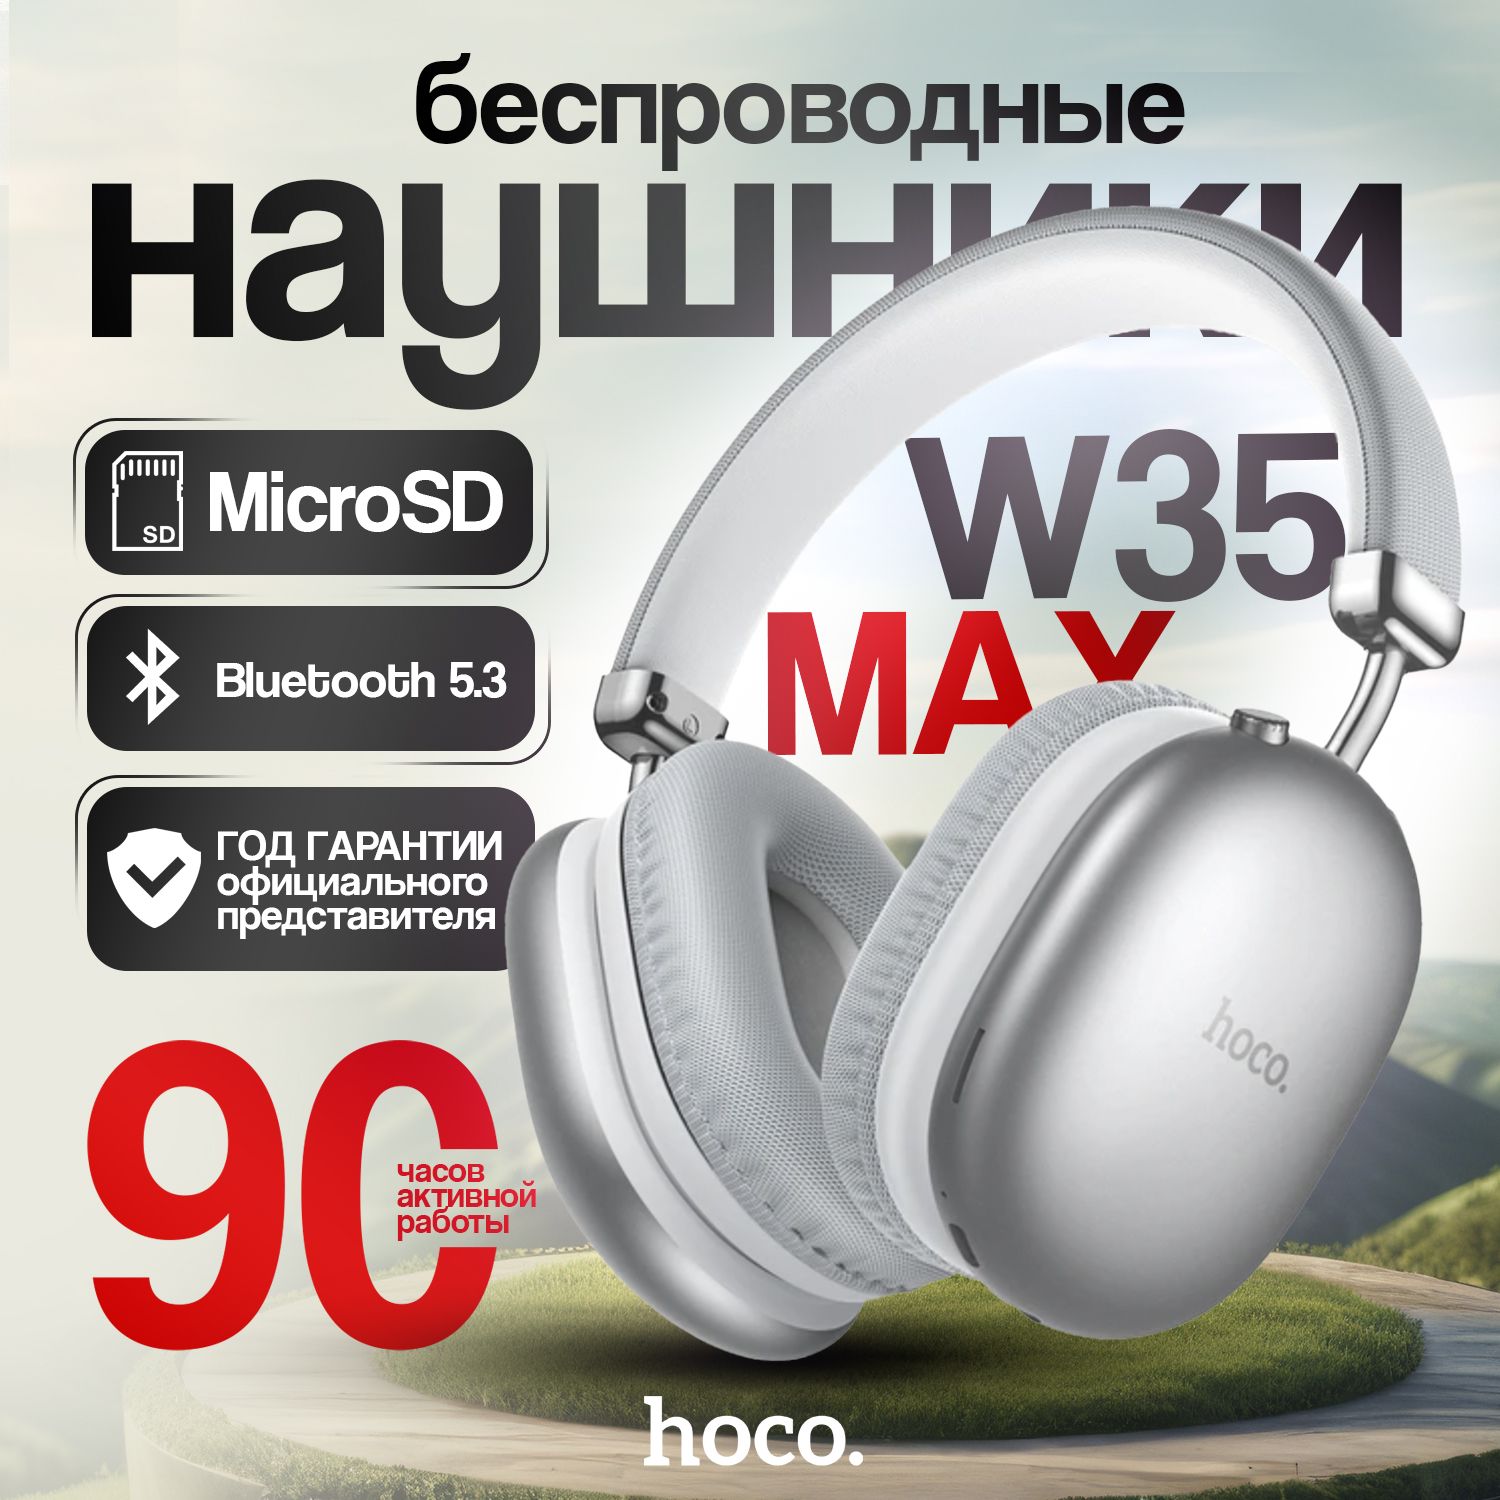 hocoБольшиебеспроводныенаушникисмикрофономW35MAXnew,накладные,спортивные,Bluetooth,белый